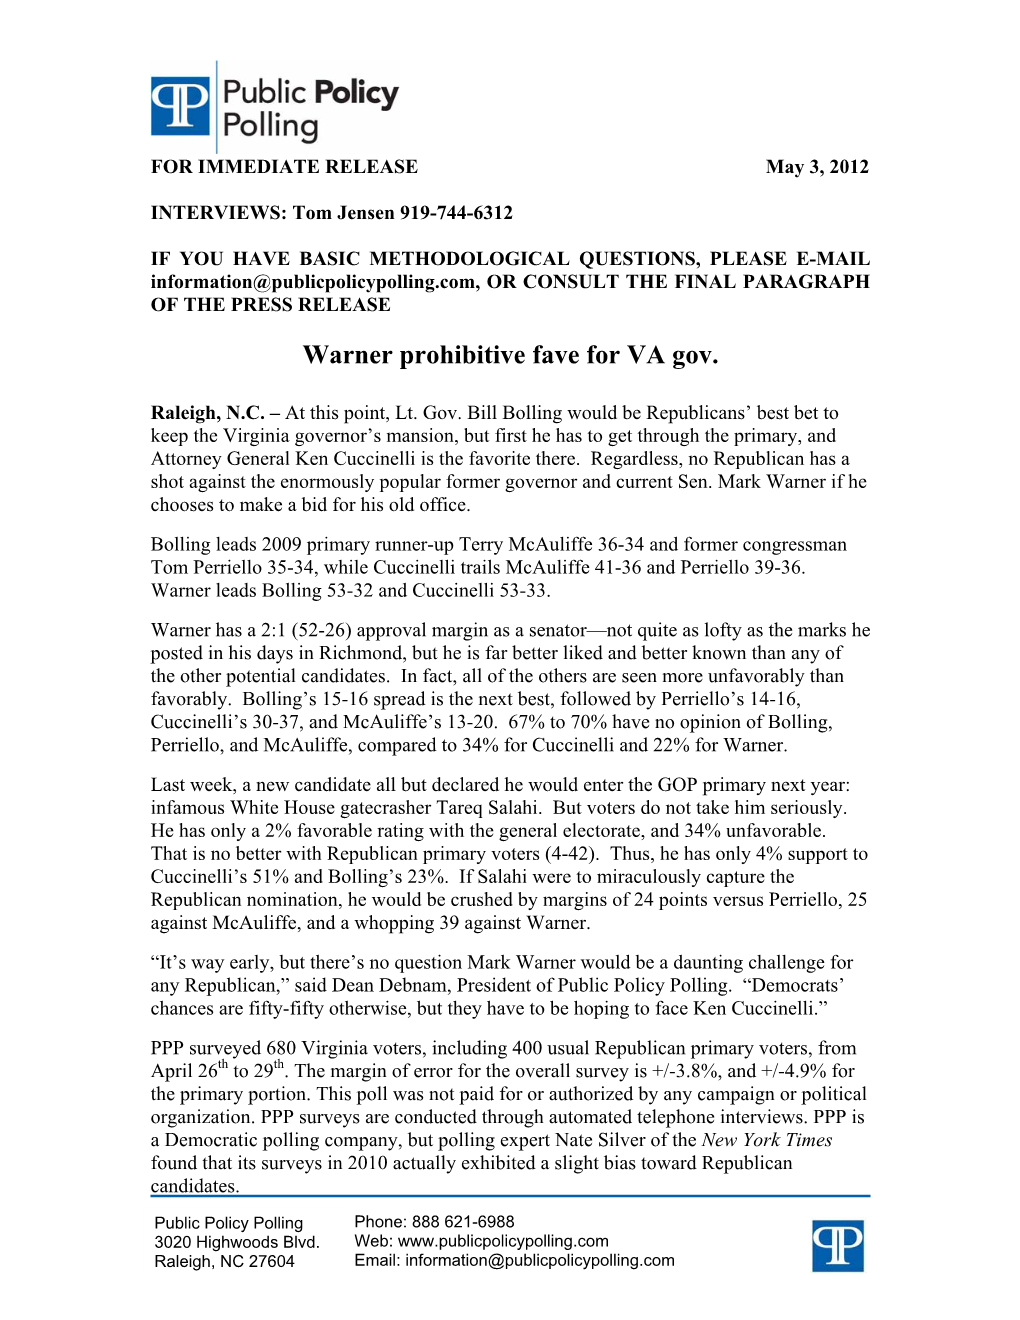 Warner Prohibitive Fave for VA Gov